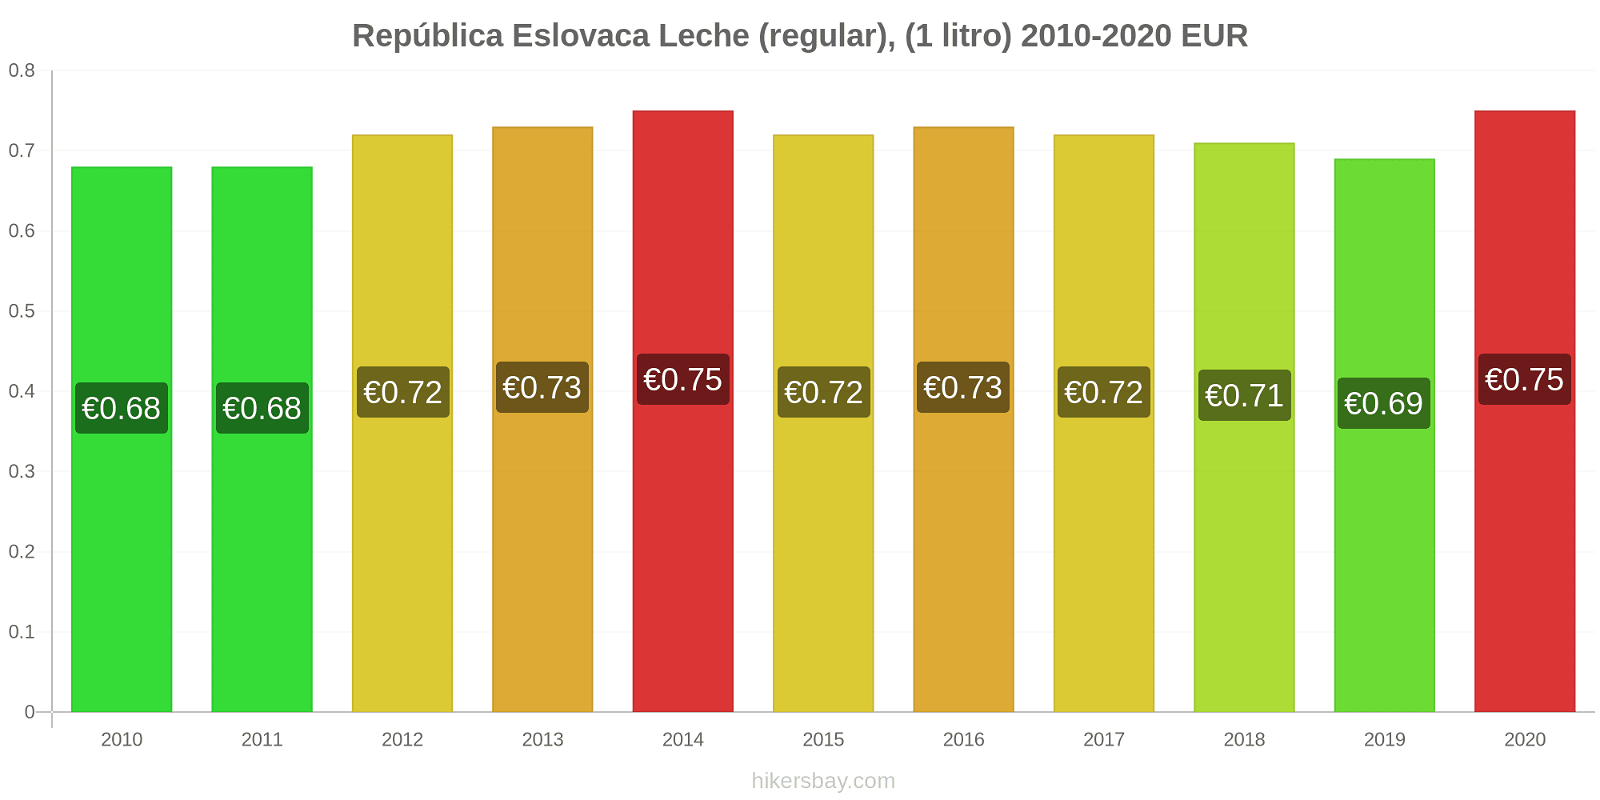 República Eslovaca cambios de precios Leche (Regular), (1 litro) hikersbay.com